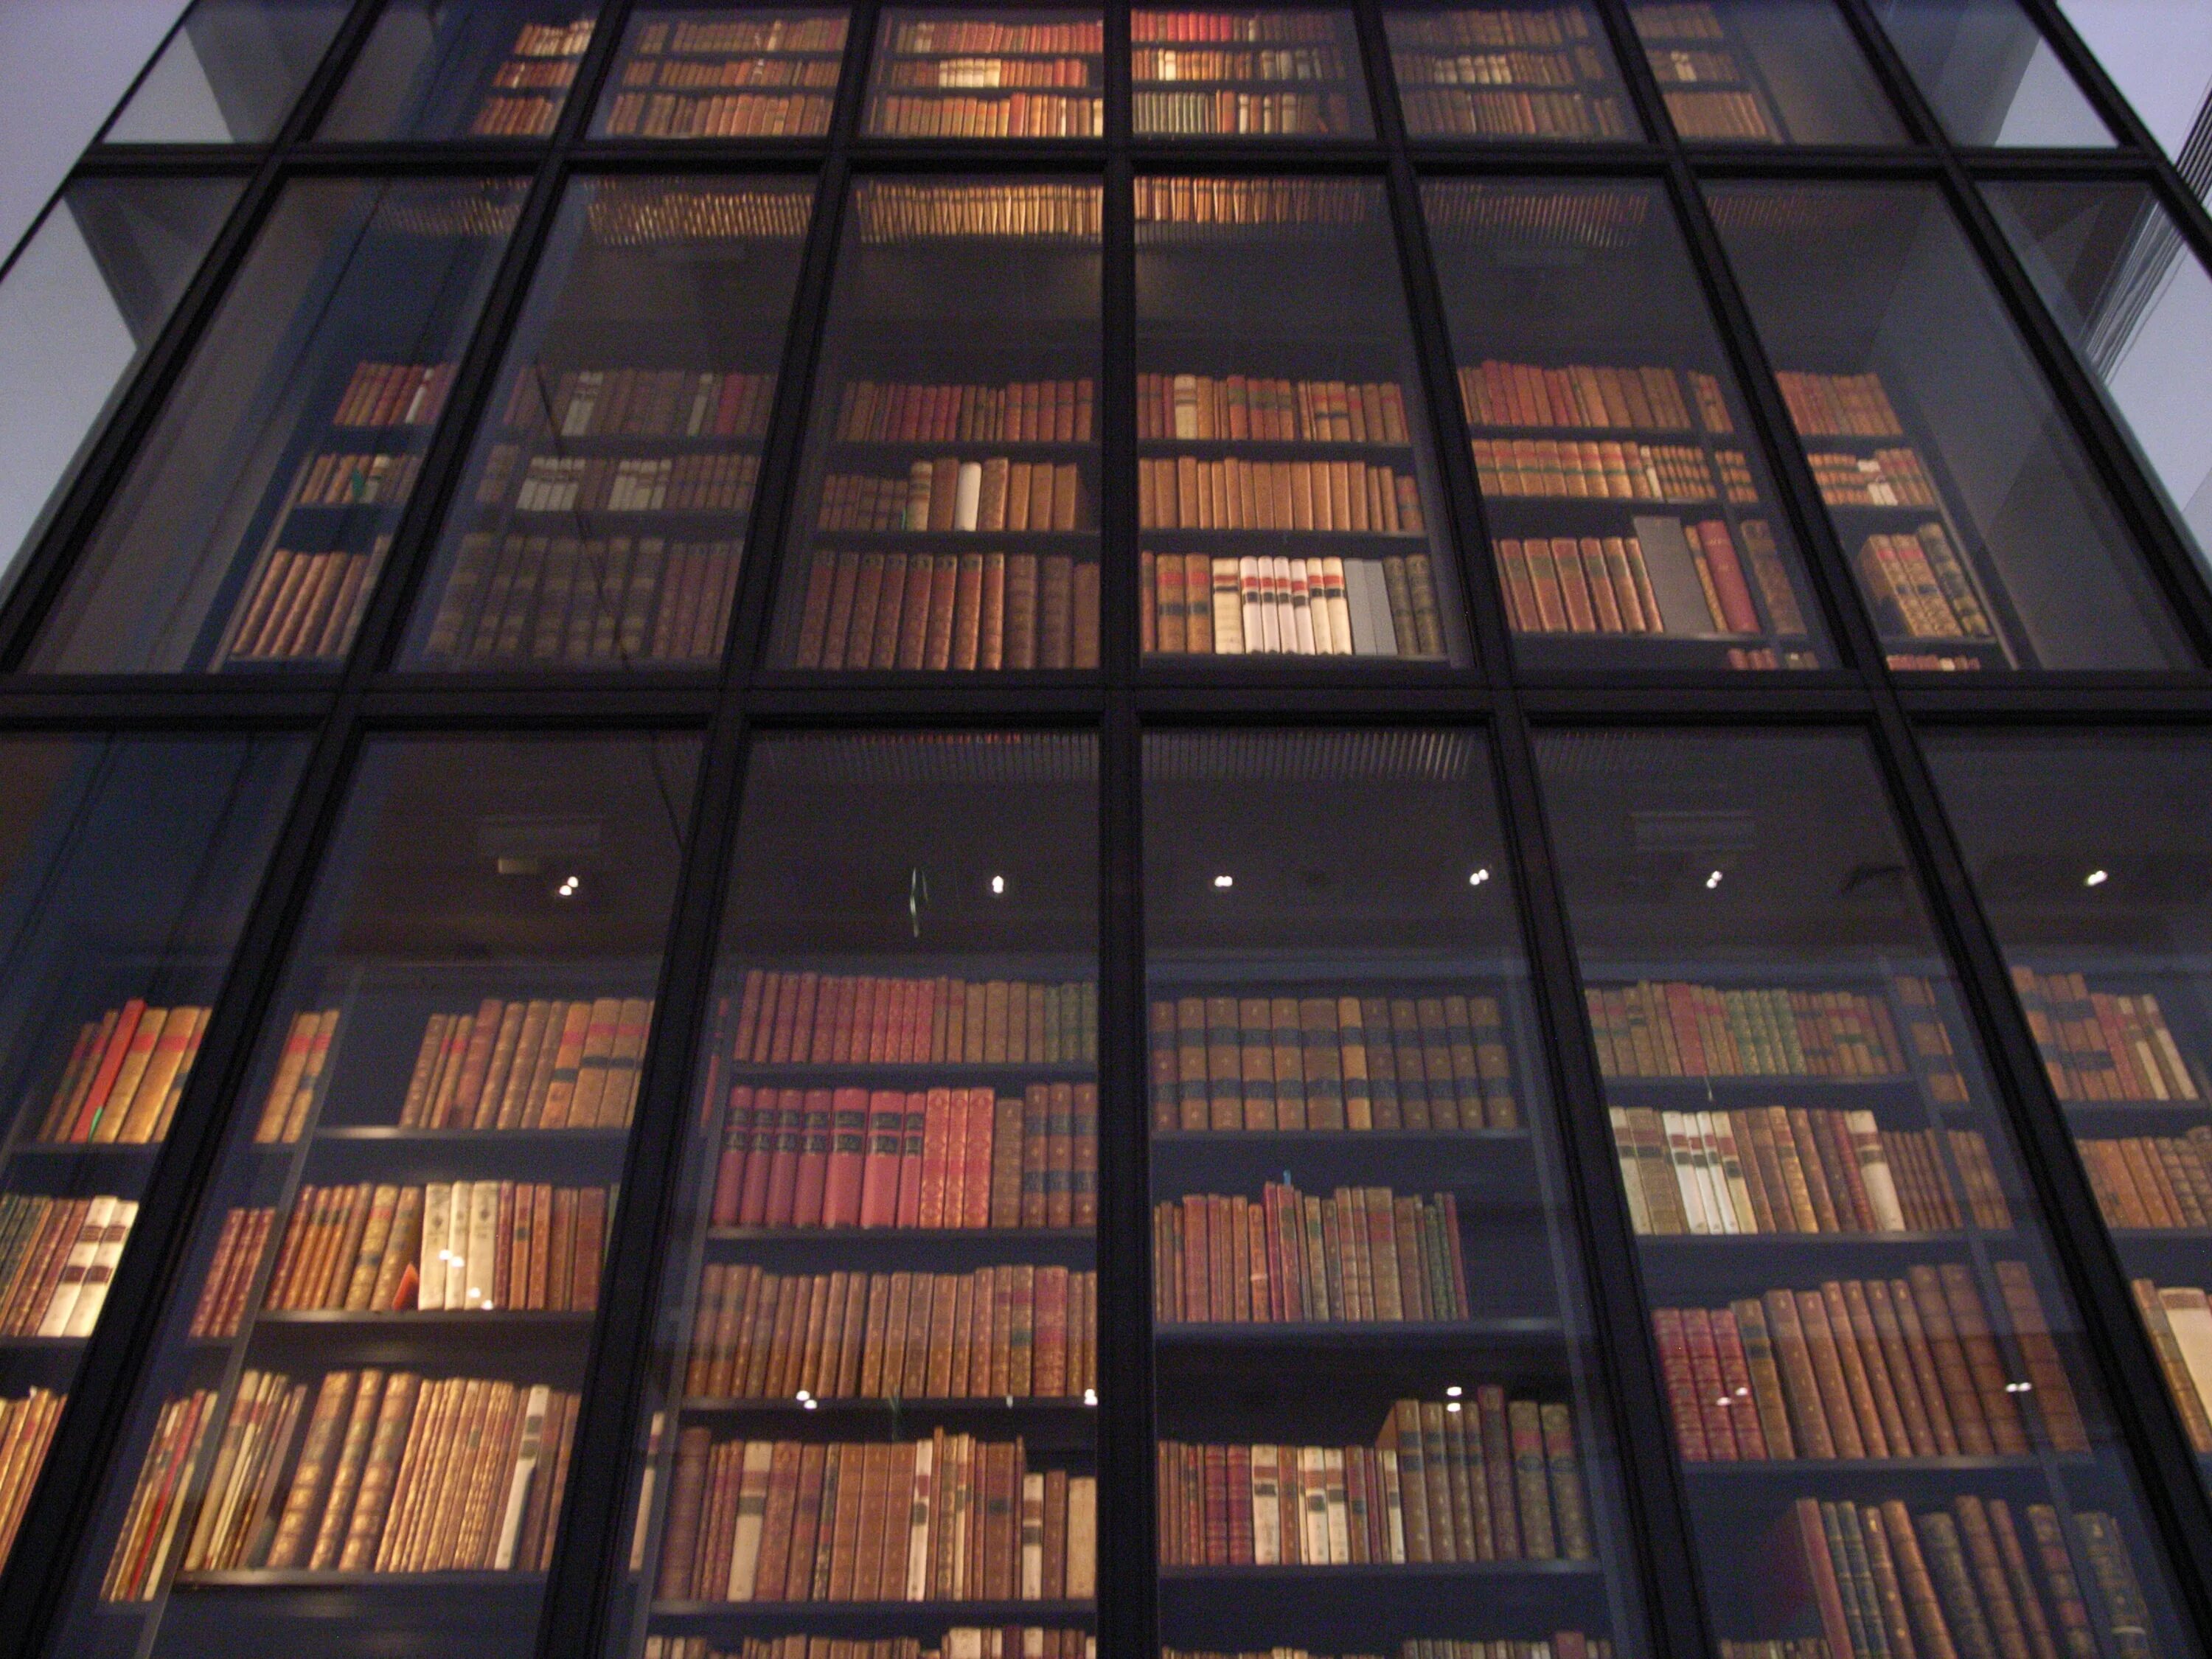 Библиотека архив 3. Британская библиотека в Лондоне. Национальная библиотека Лондона. Британская библиотека (British Library). Библиотека британского музея.